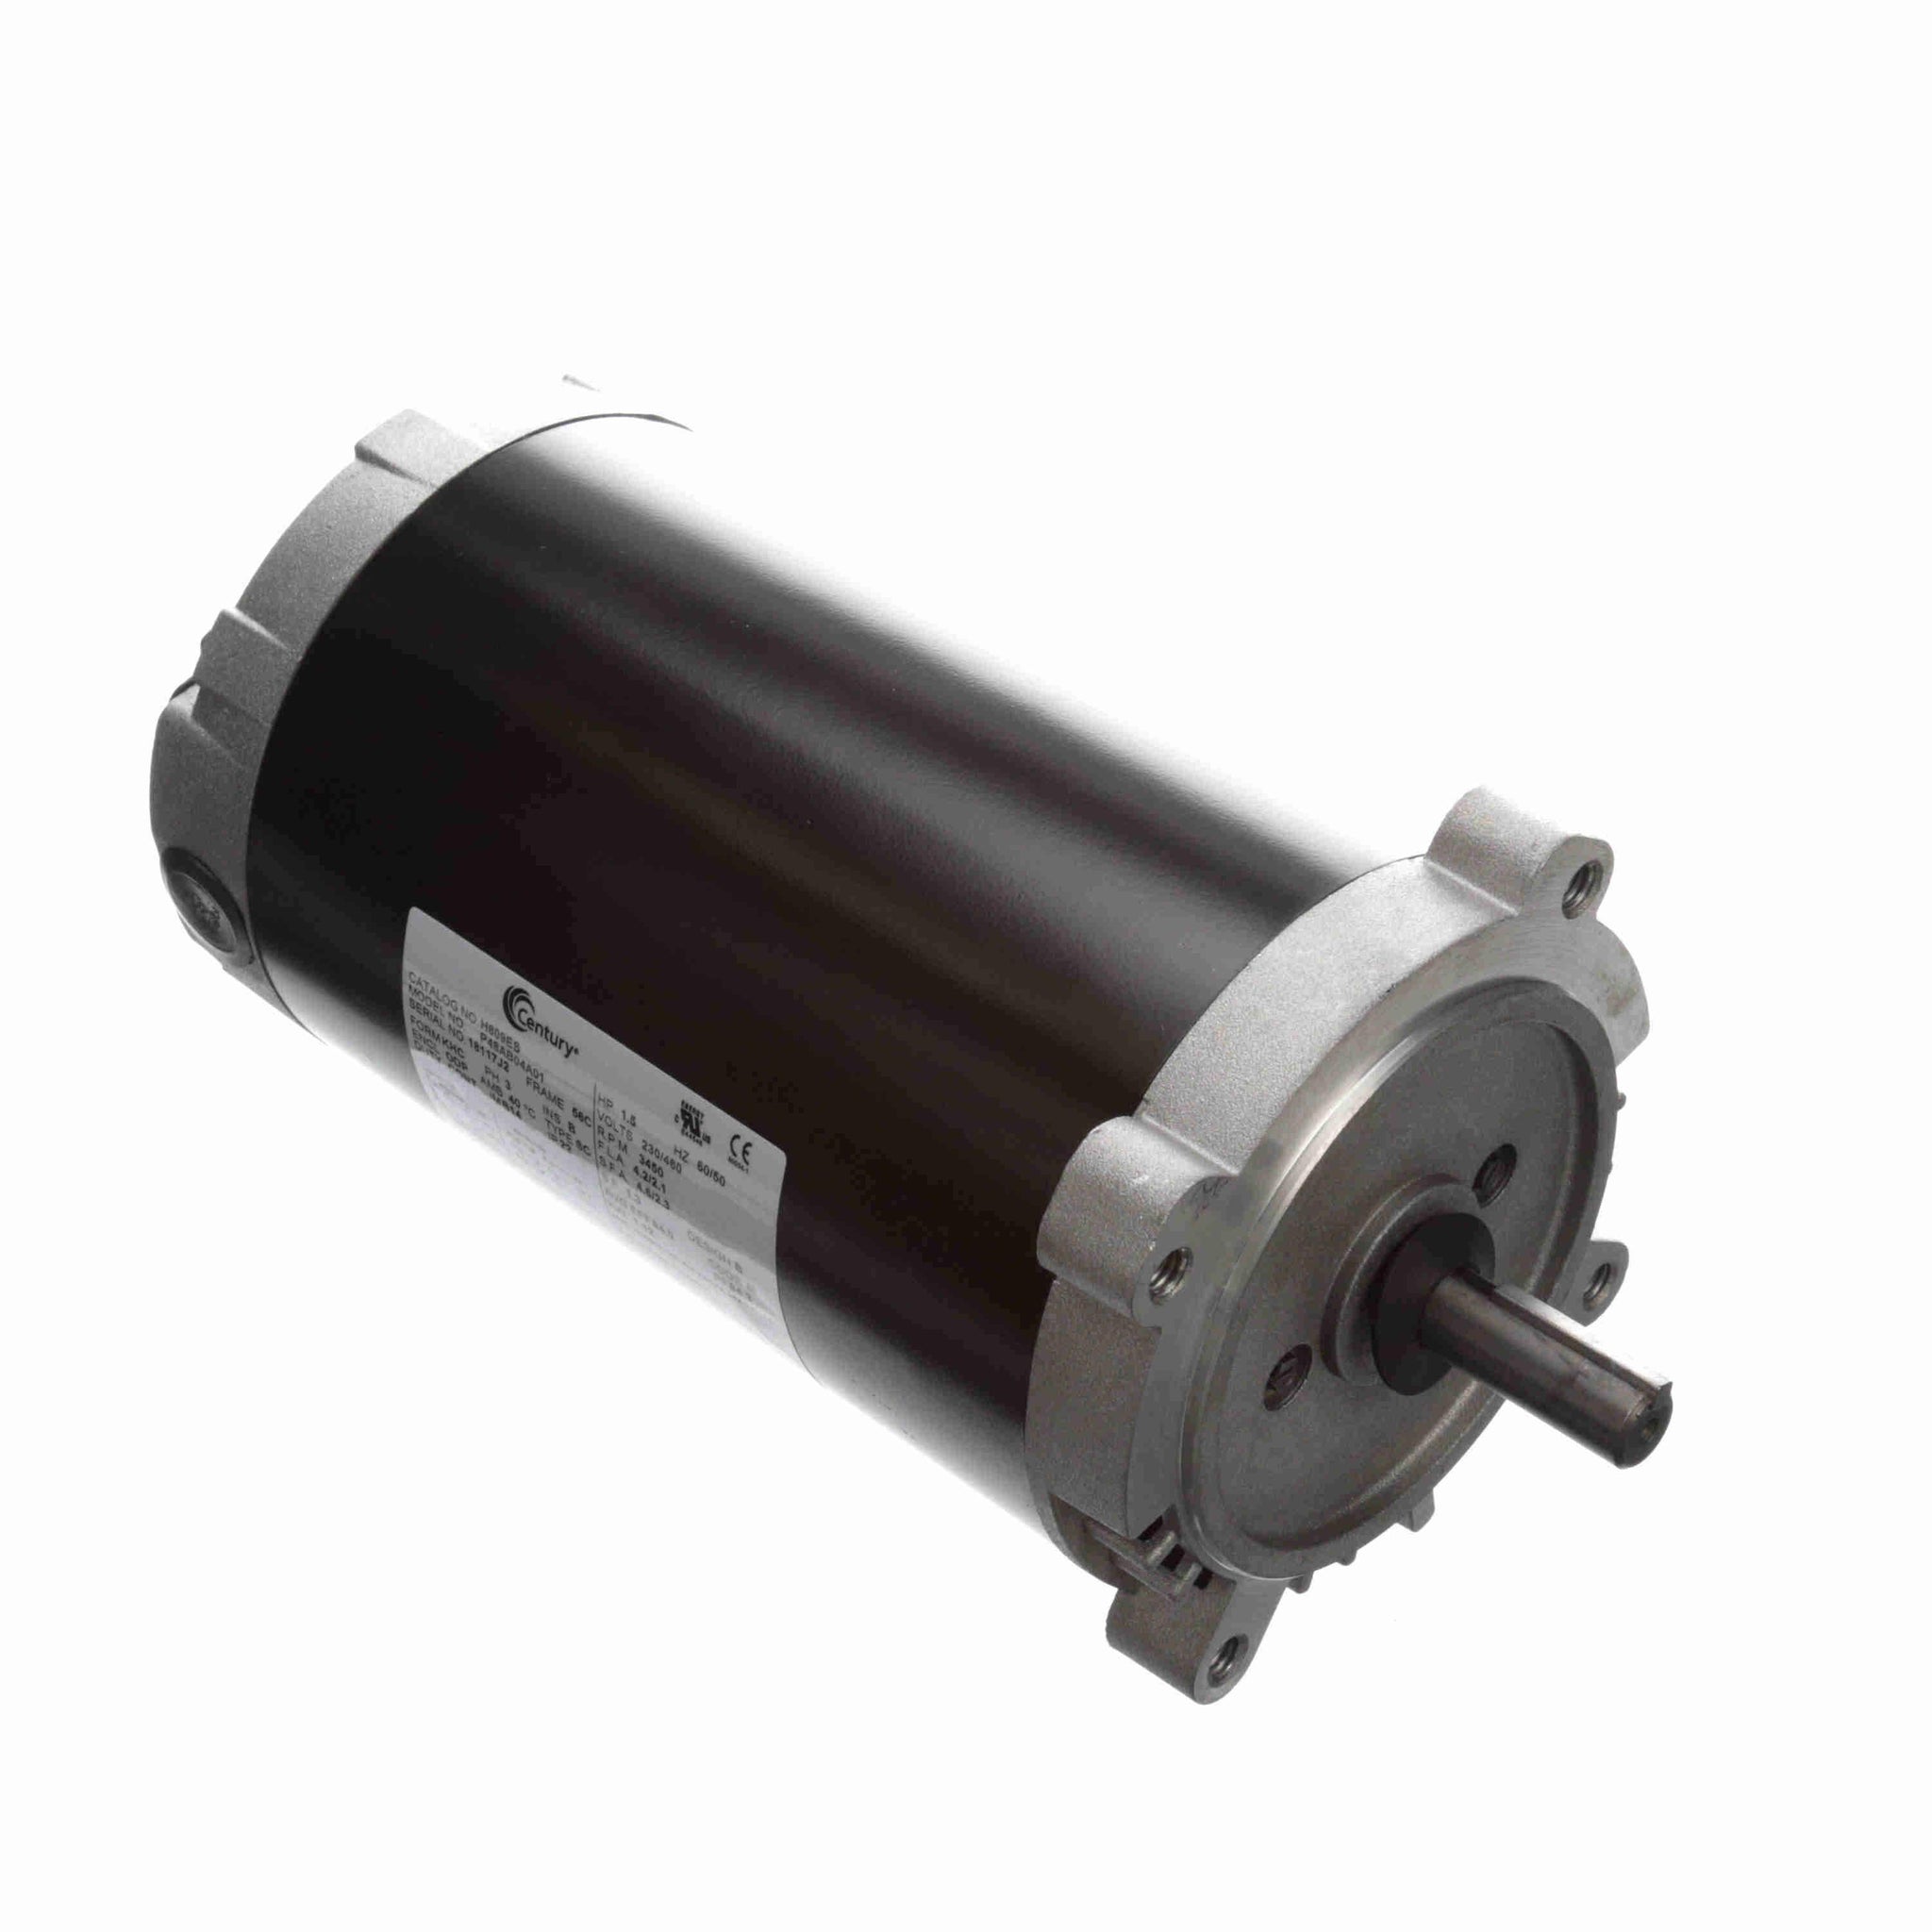 H609ES -  1.5 HP General Purpose Pump Motor, 3 phase, 3600 RPM, 230/460 V, 56C Frame, ODP - Hardware & Moreee